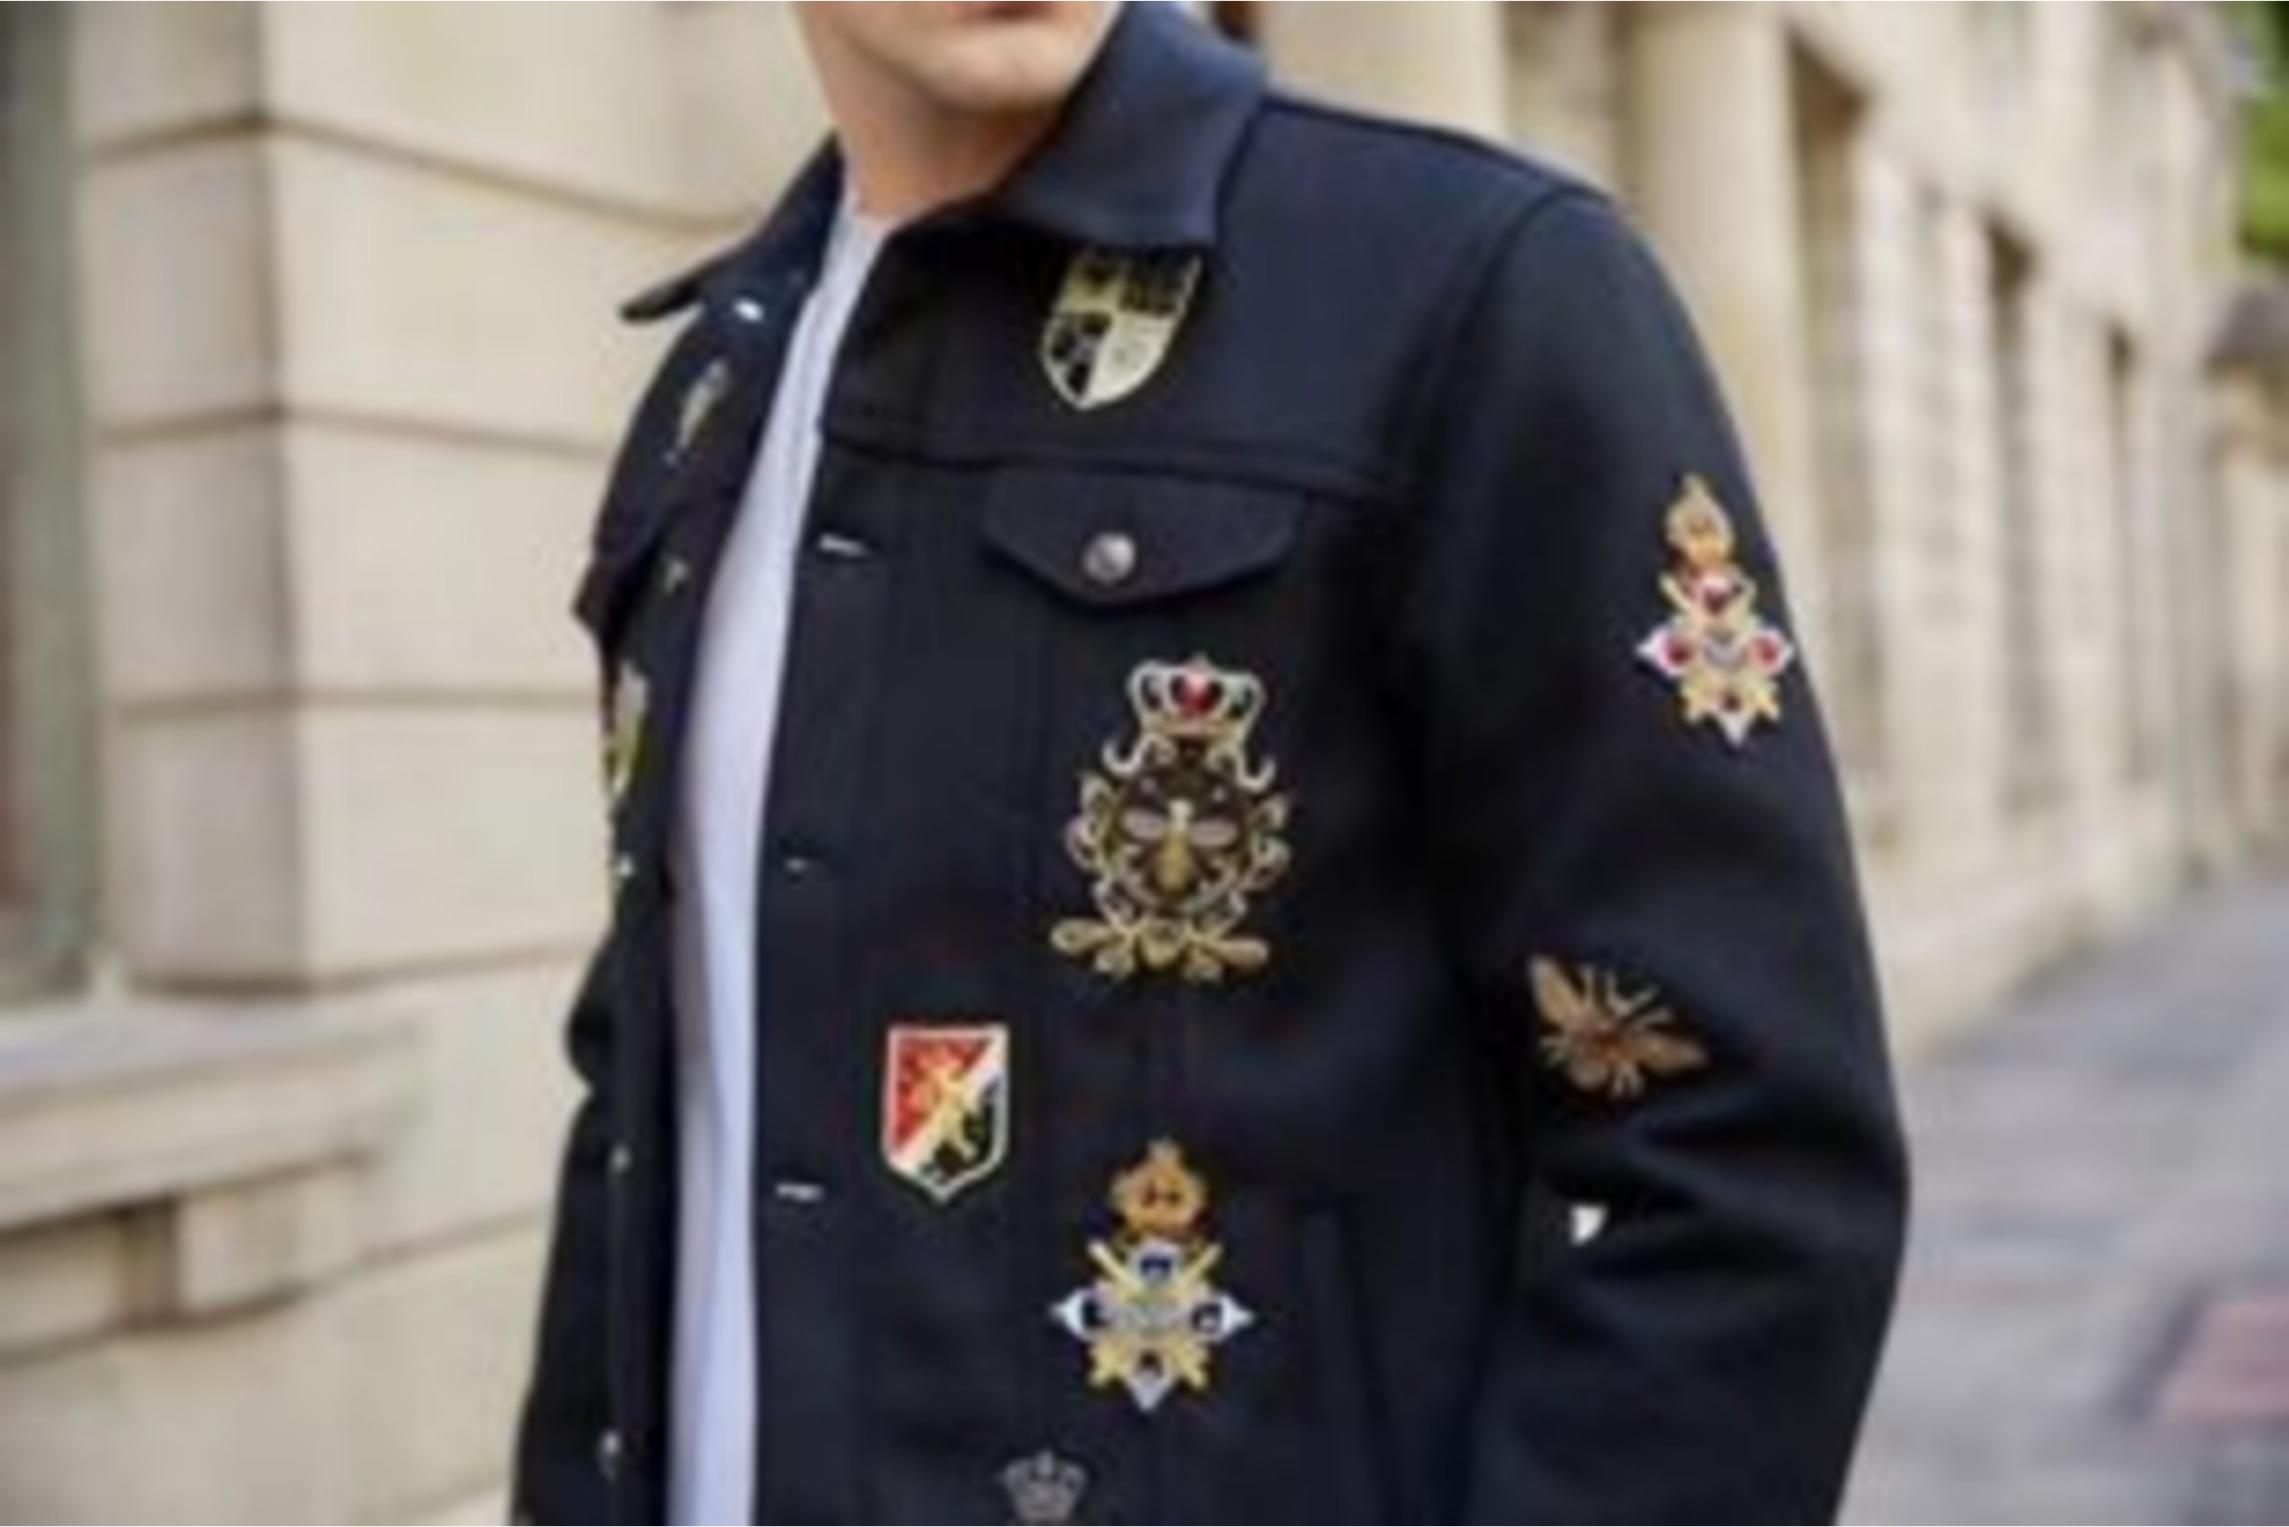 Áo khoác sang trọng mang phong cách Âu Mỹ chất vải cotton cao cấp có độ dày phù hợp xu hướng thời trang